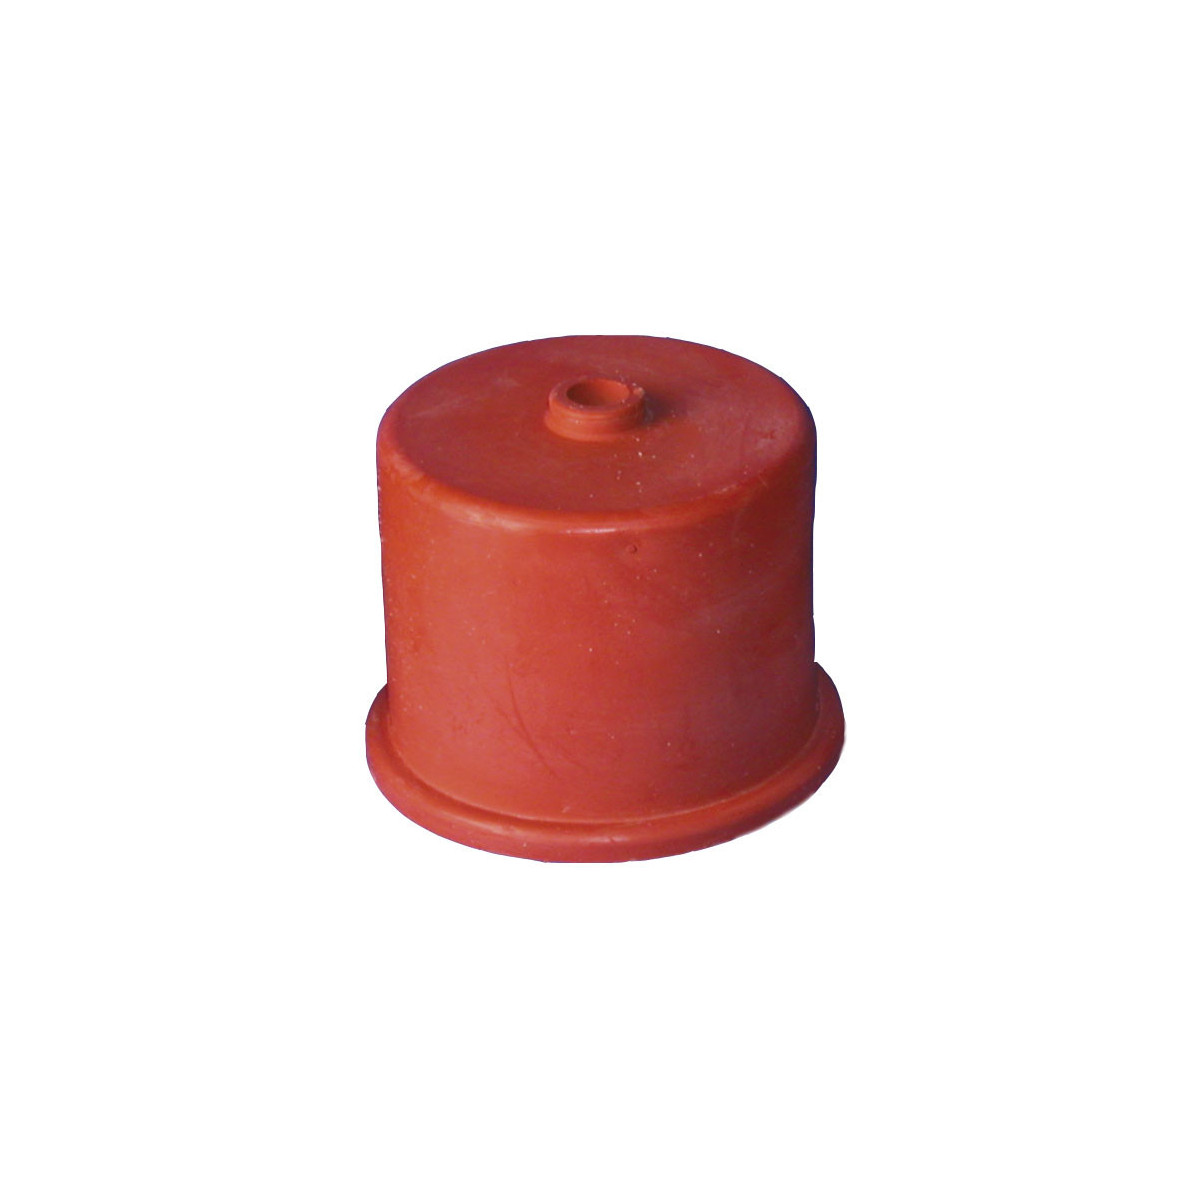 Gummikappe Nr. 5, 60 mm, mit 9 mm Loch